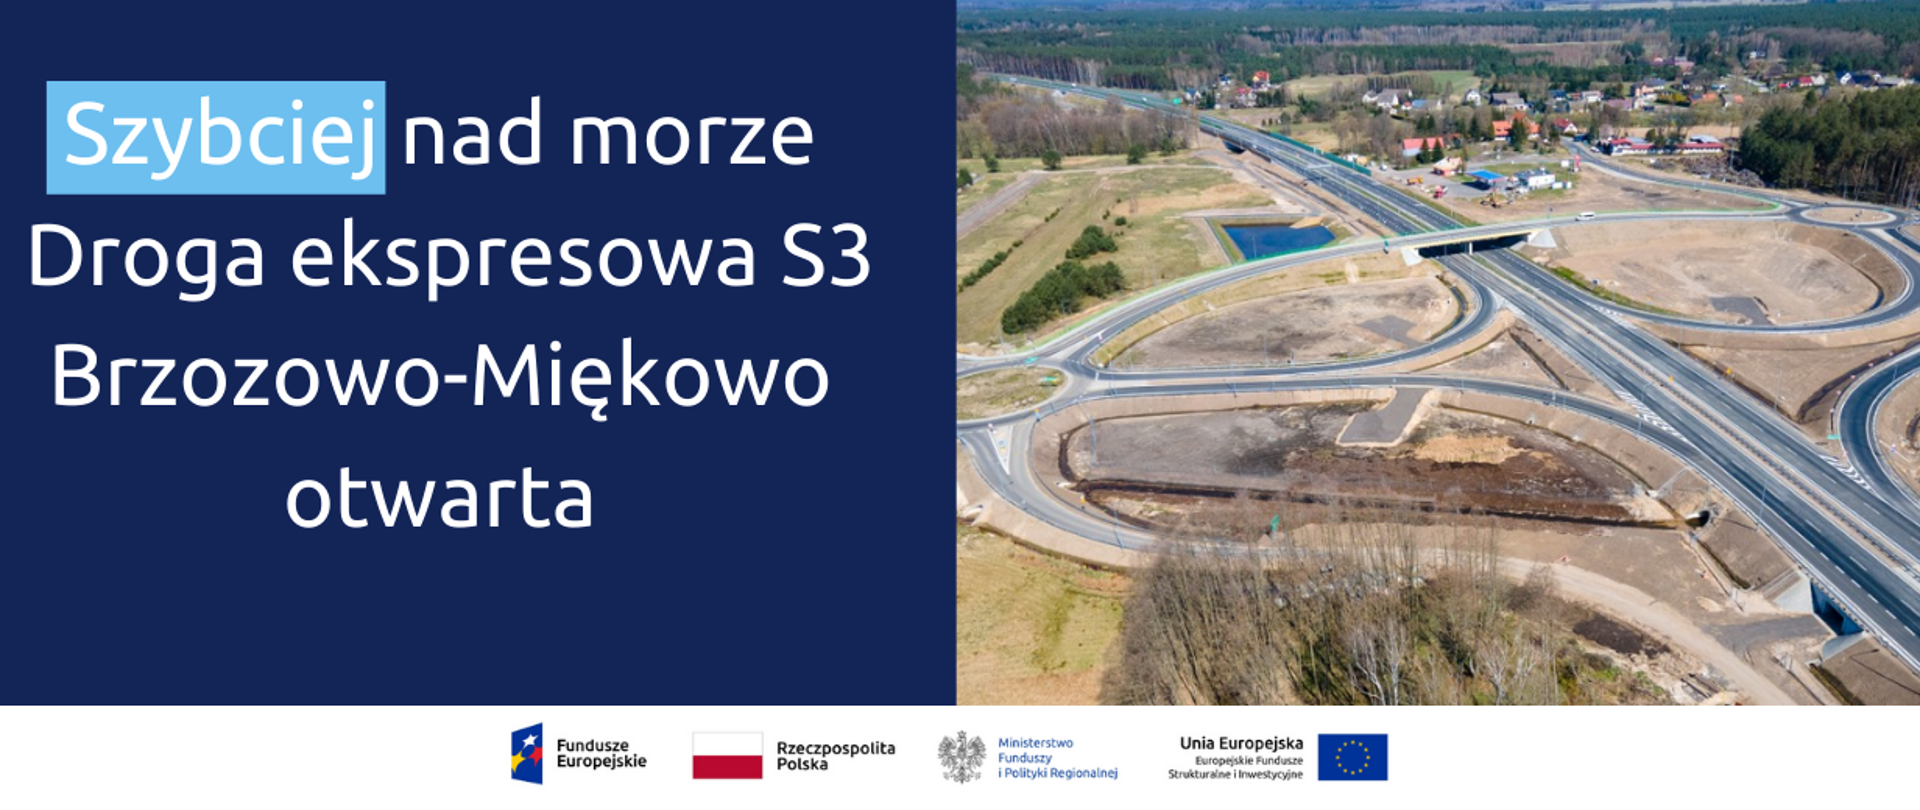 Po lewej napis: Szybciej nad morze. Droga ekspresowa S3 Brzozowo-Miękowo otwarta. Po prawej zdjęcie drogi.